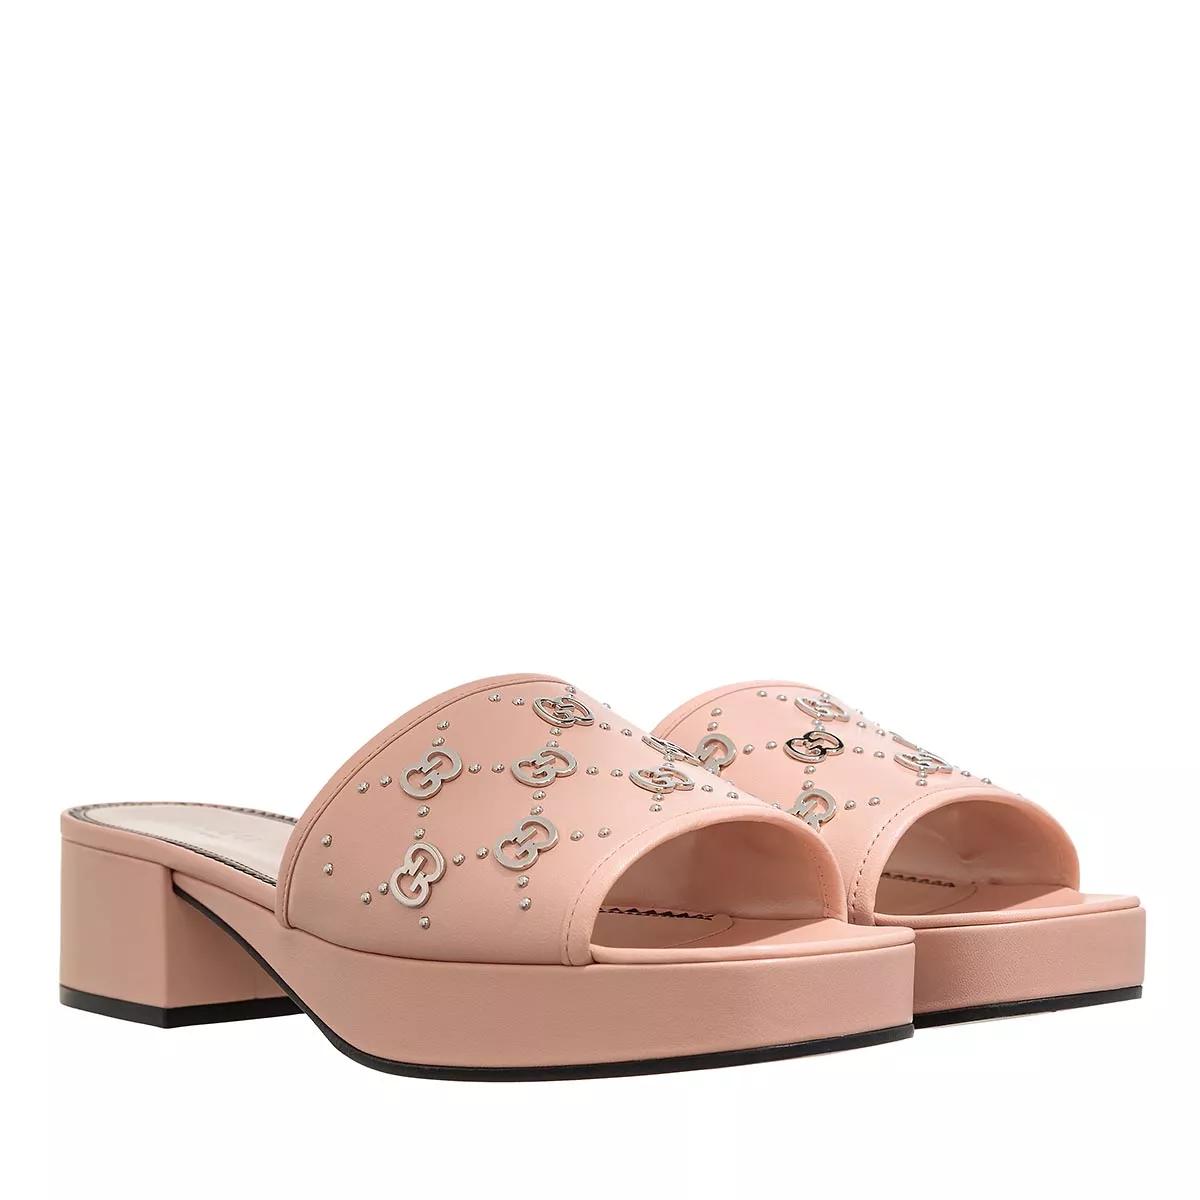 Gucci Sandalen - Interlocking G Slide Sandals - Gr. 40 (EU) - in Rosa - für Damen von Gucci